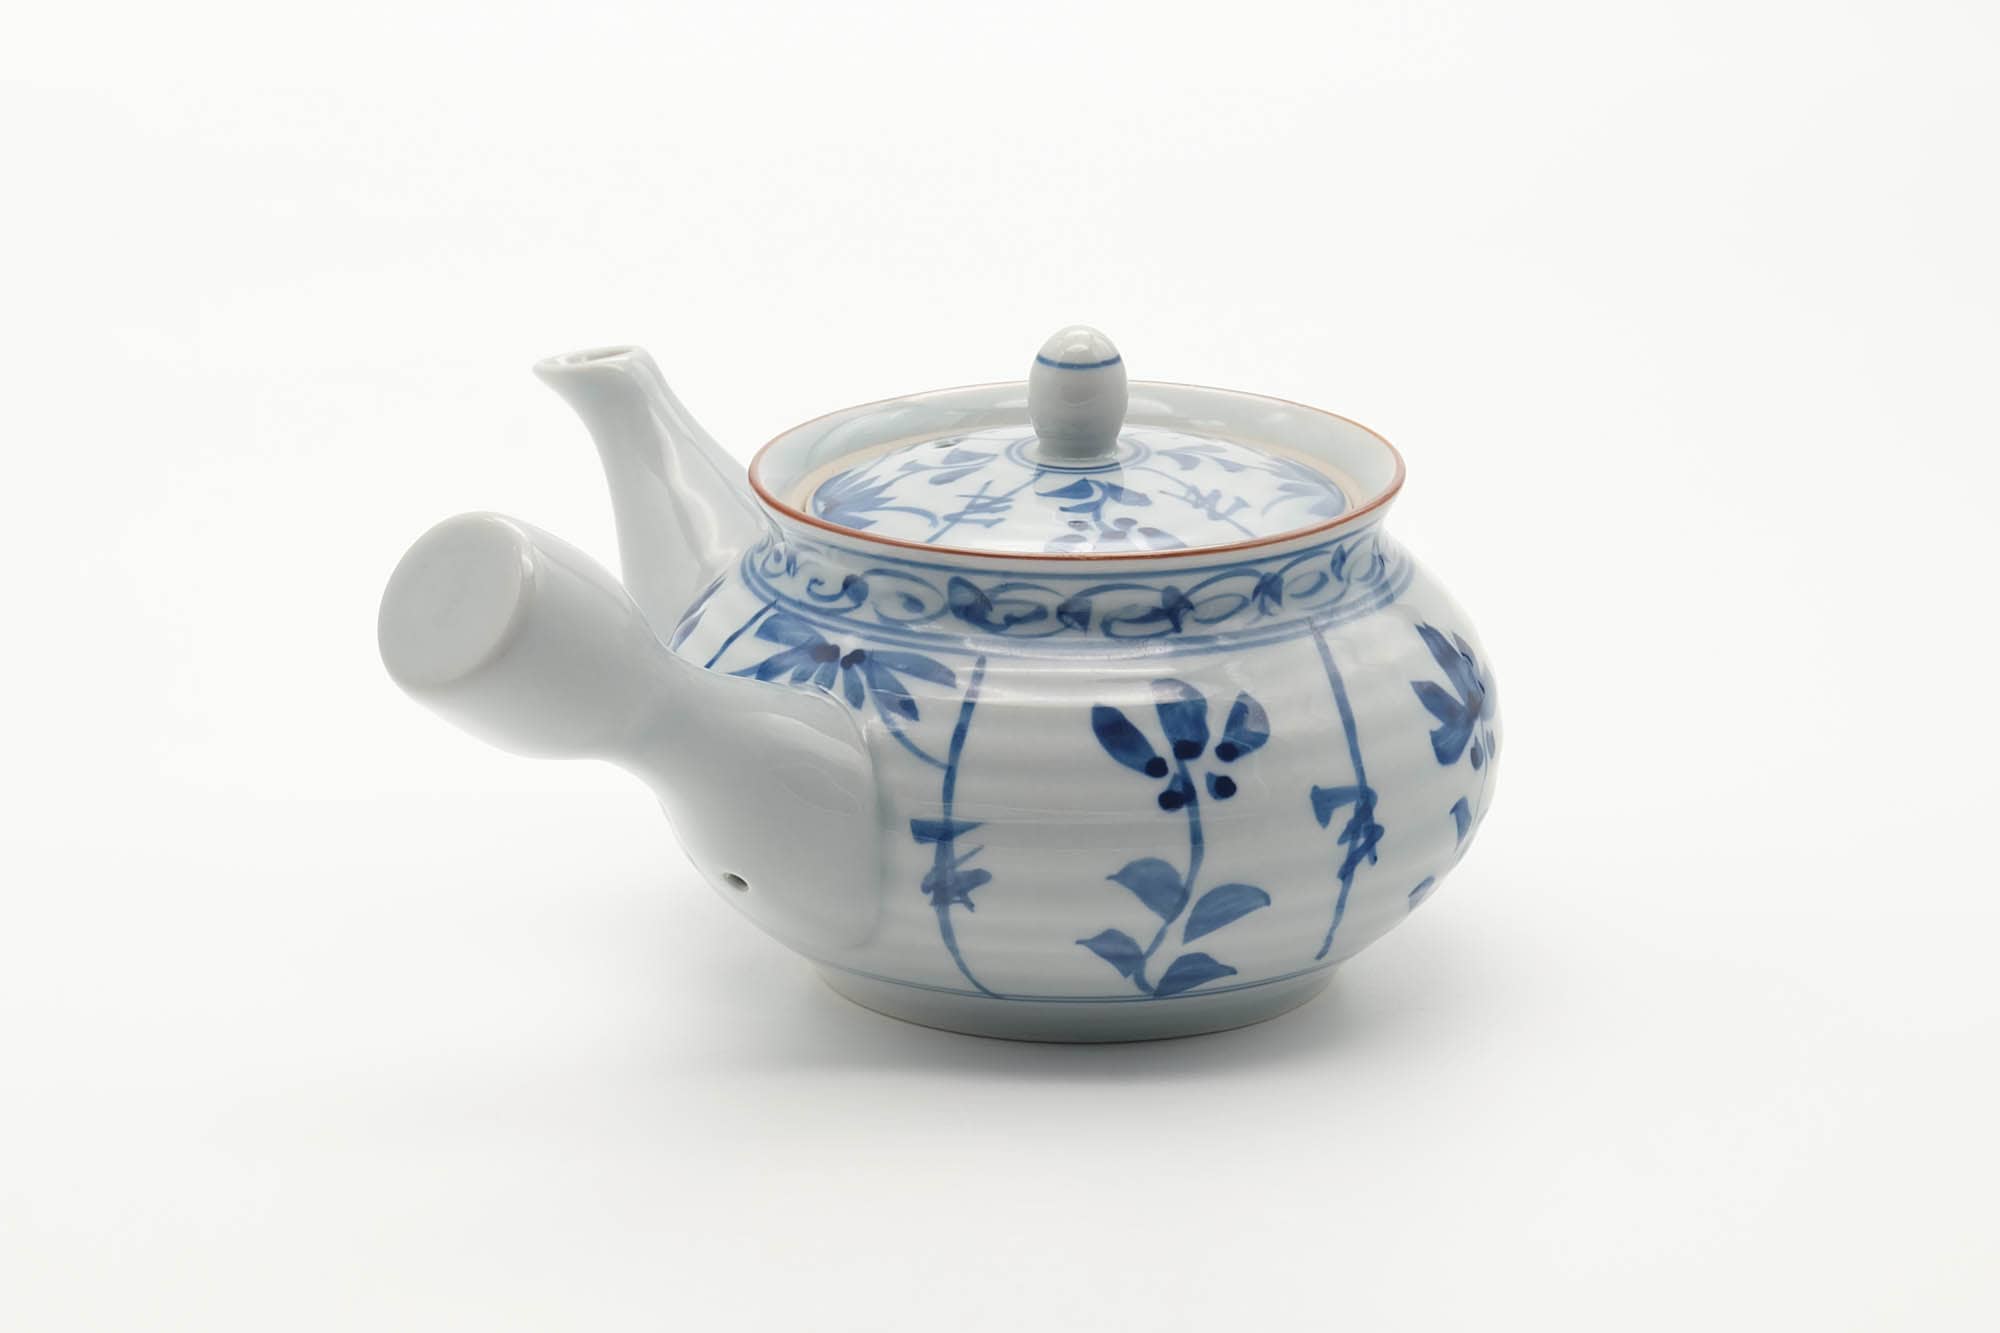 Japanese Kyusu - Floral Blue White Porcelain Arita-yaki Teapot - 350ml